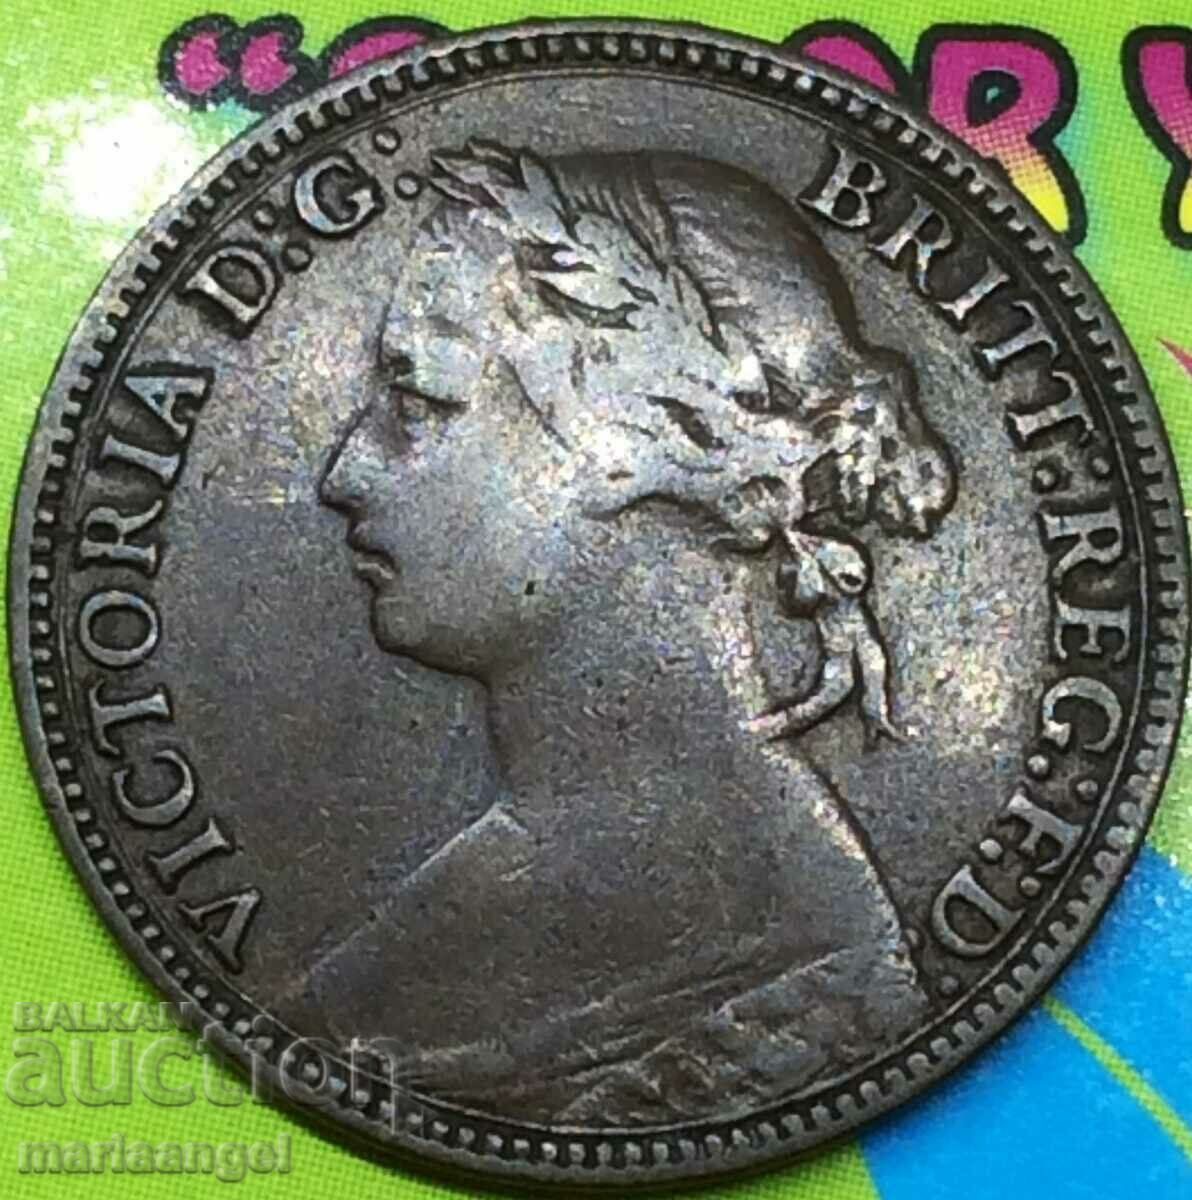 Great Britain 1farthing 1874 H bronze - quite rare